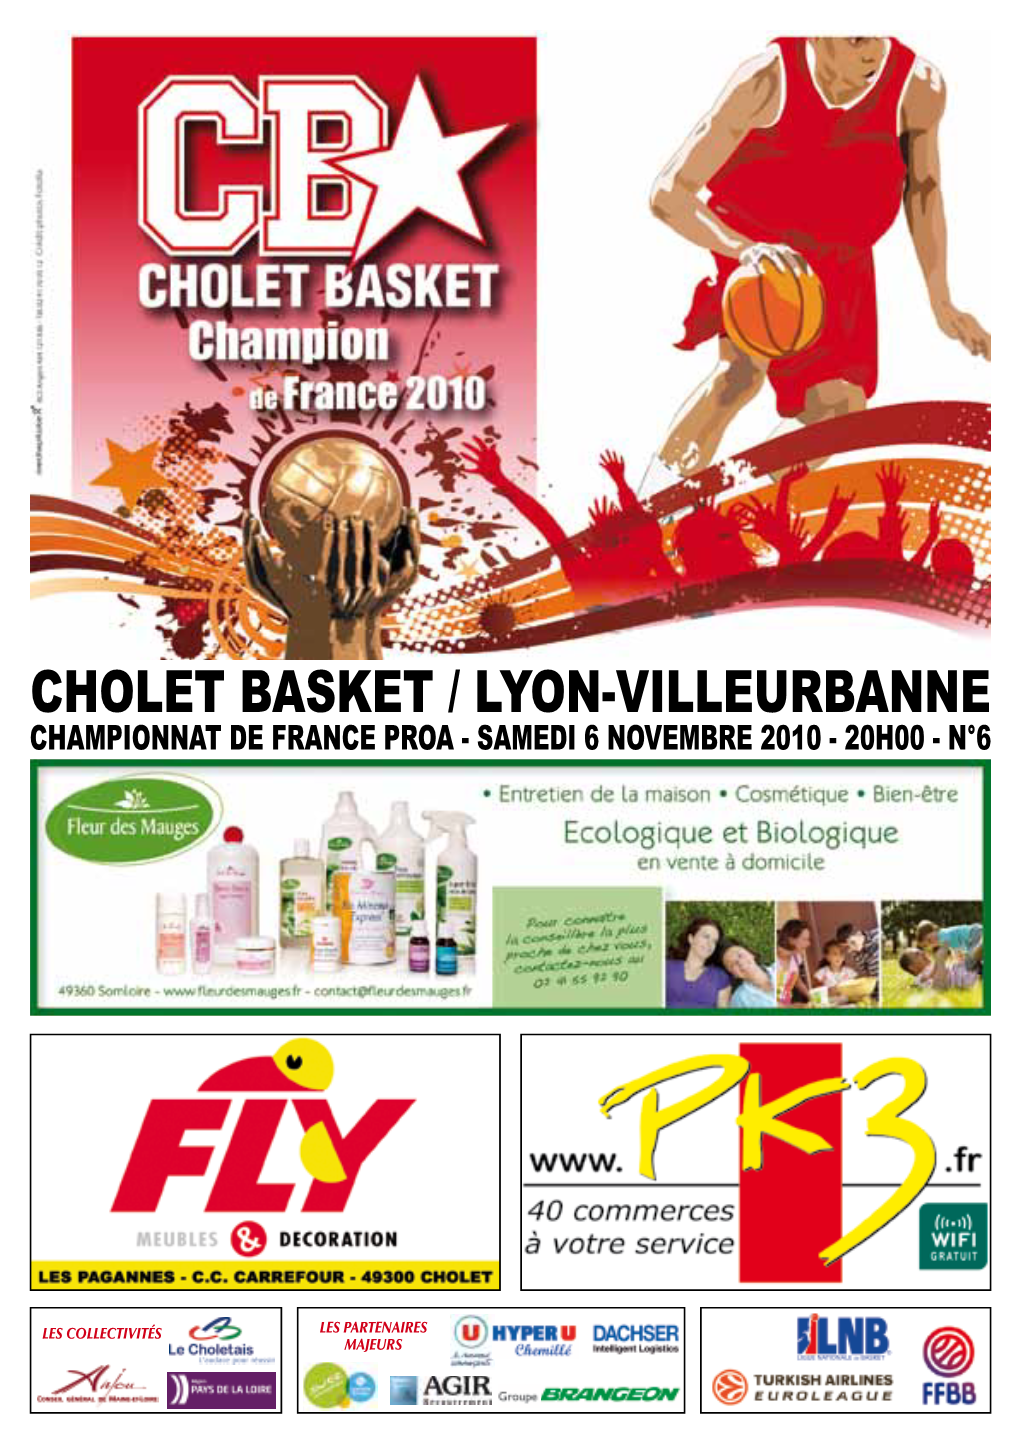 Cholet Basket / Lyon-Villeurbanne Championnat De France Proa - Samedi 6 Novembre 2010 - 20H00 - N°6